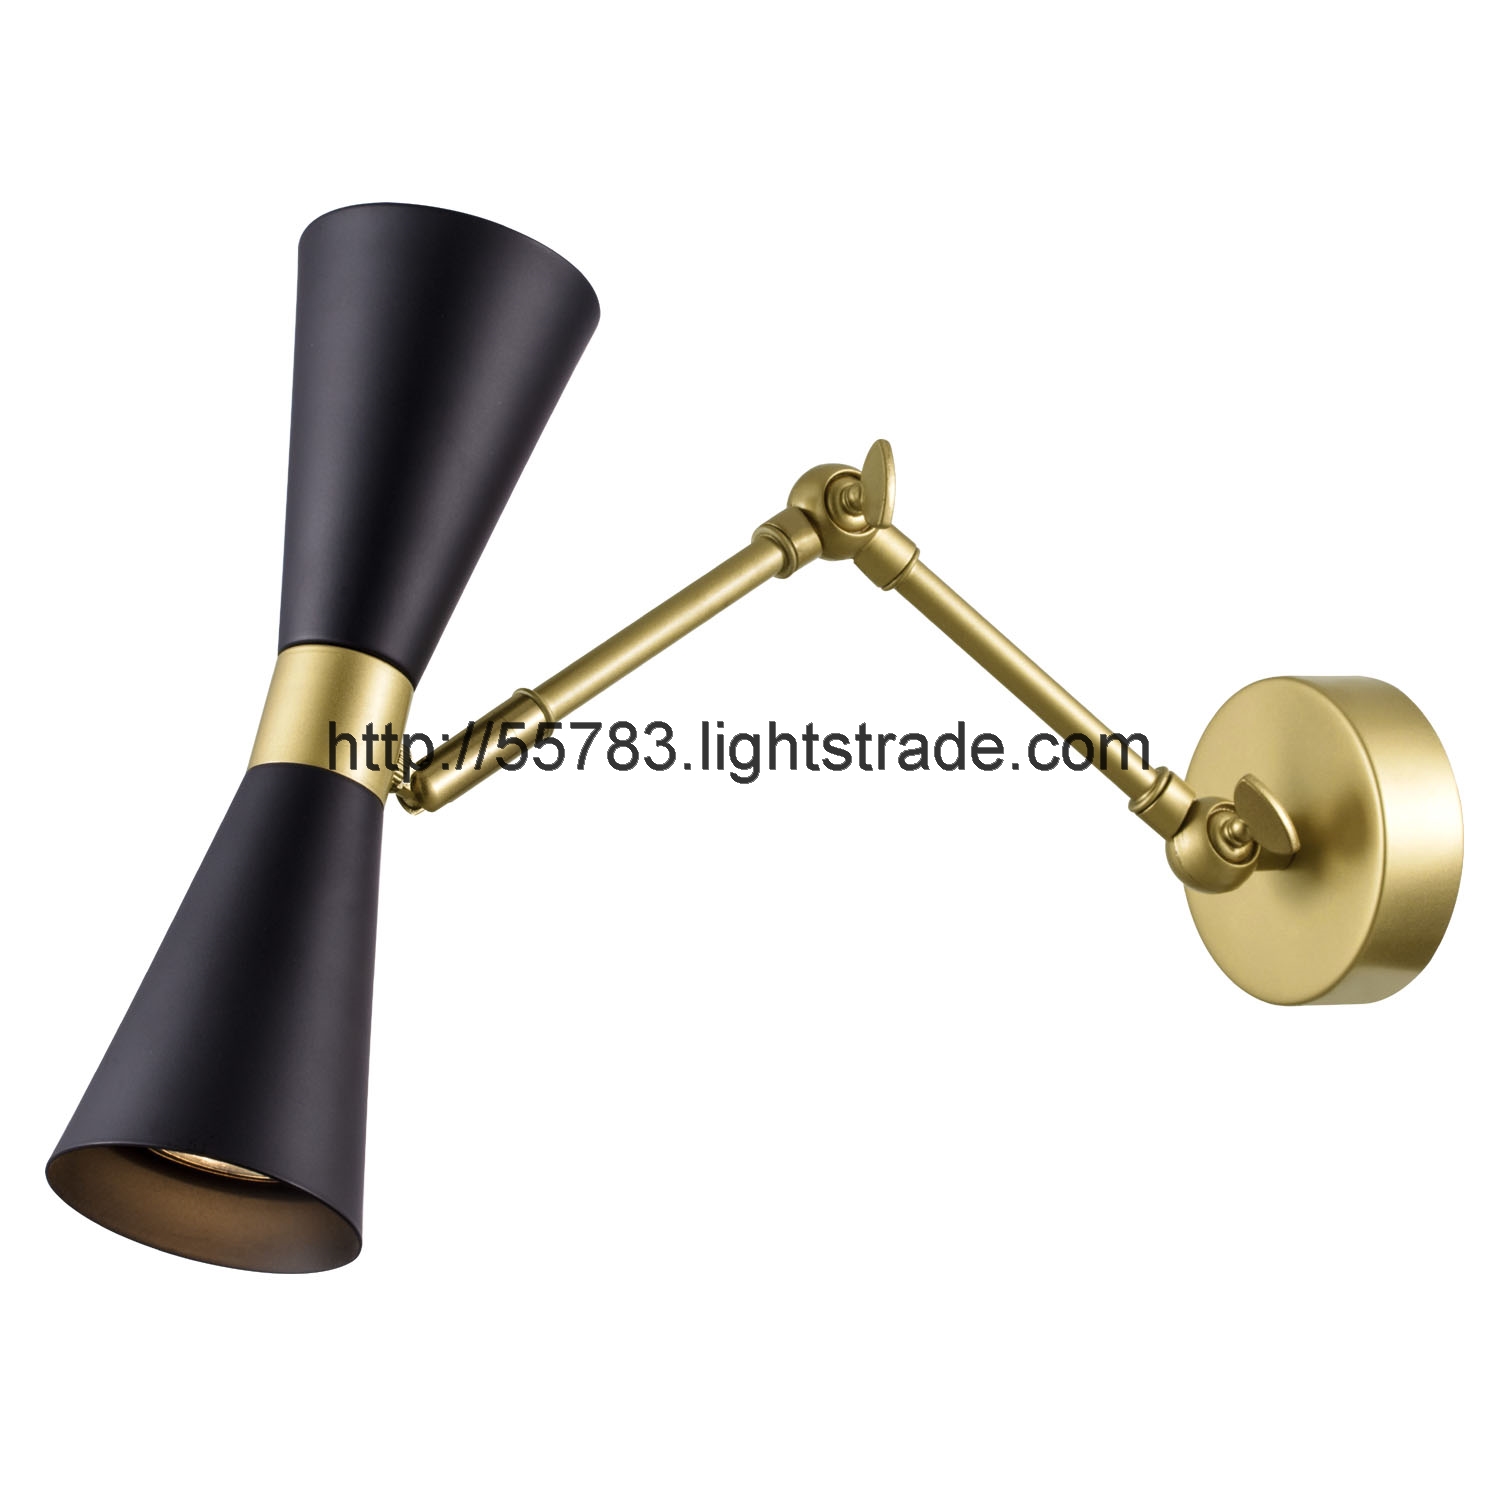 WALL LAMP BLACK WHITE GU10 ROUND BASE LAMP HW220730 SERIES